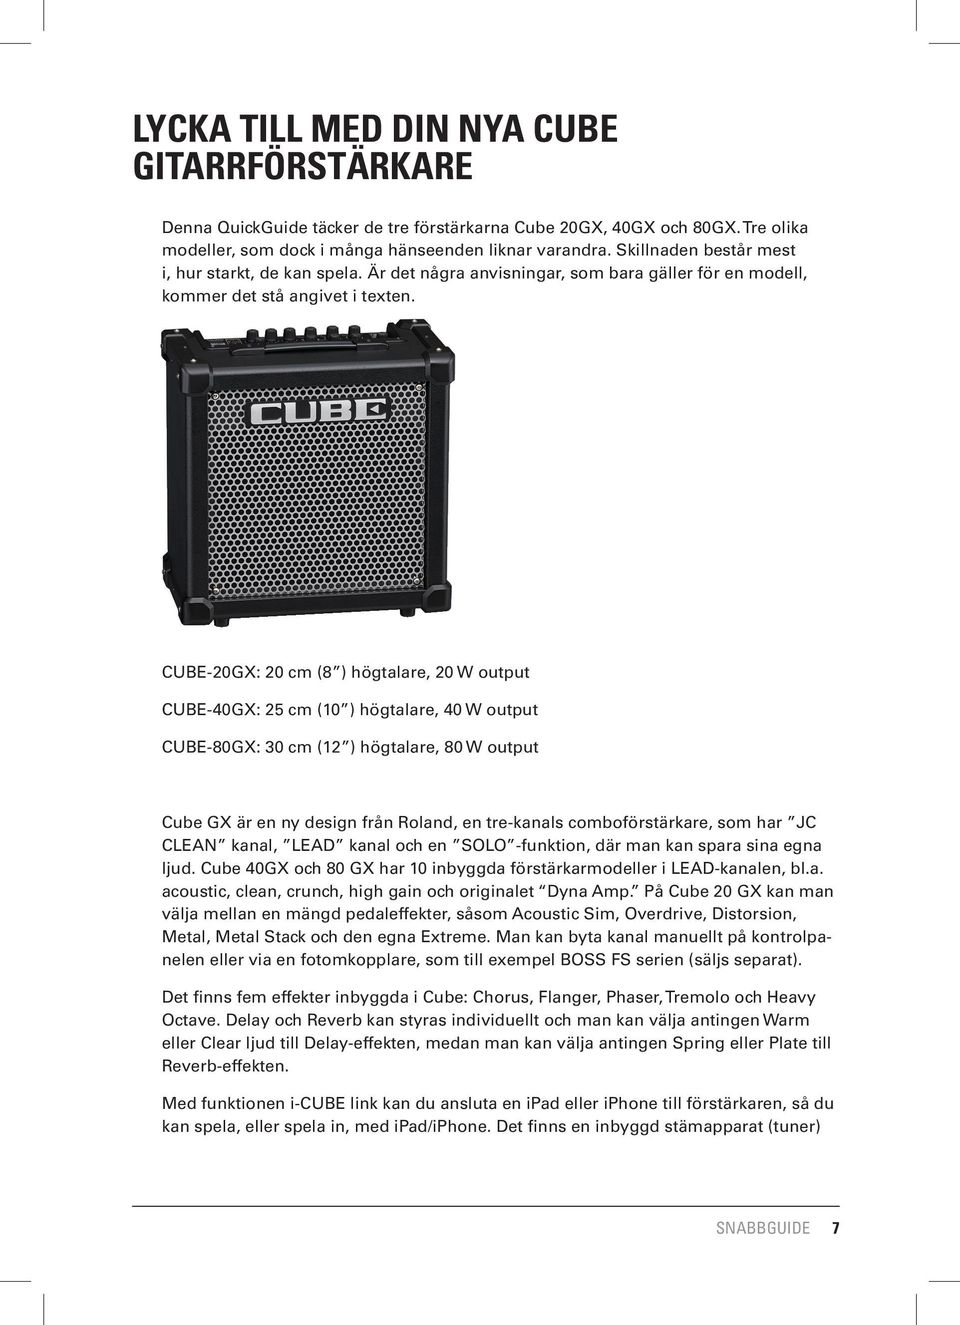 CUBE-20GX: 20 cm (8 ) högtalare, 20 W output CUBE-40GX: 25 cm (10 ) högtalare, 40 W output CUBE-80GX: 30 cm (12 ) högtalare, 80 W output Cube GX är en ny design från Roland, en tre-kanals